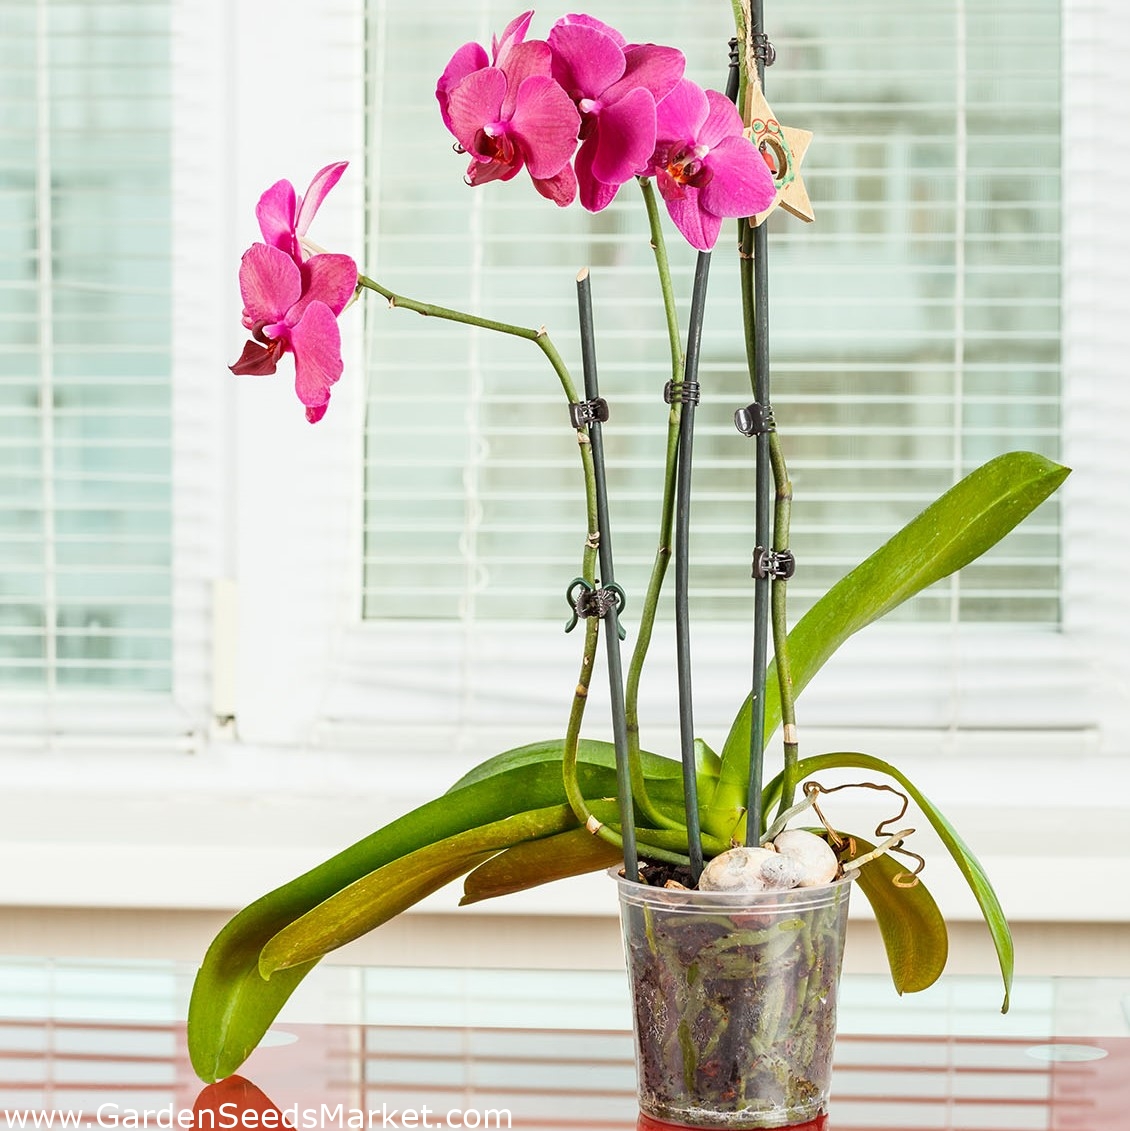 Vaso per orchidee "Amazone" trasparente - ø 12 cm - – Garden Seeds Market |  Spedizione gratuita